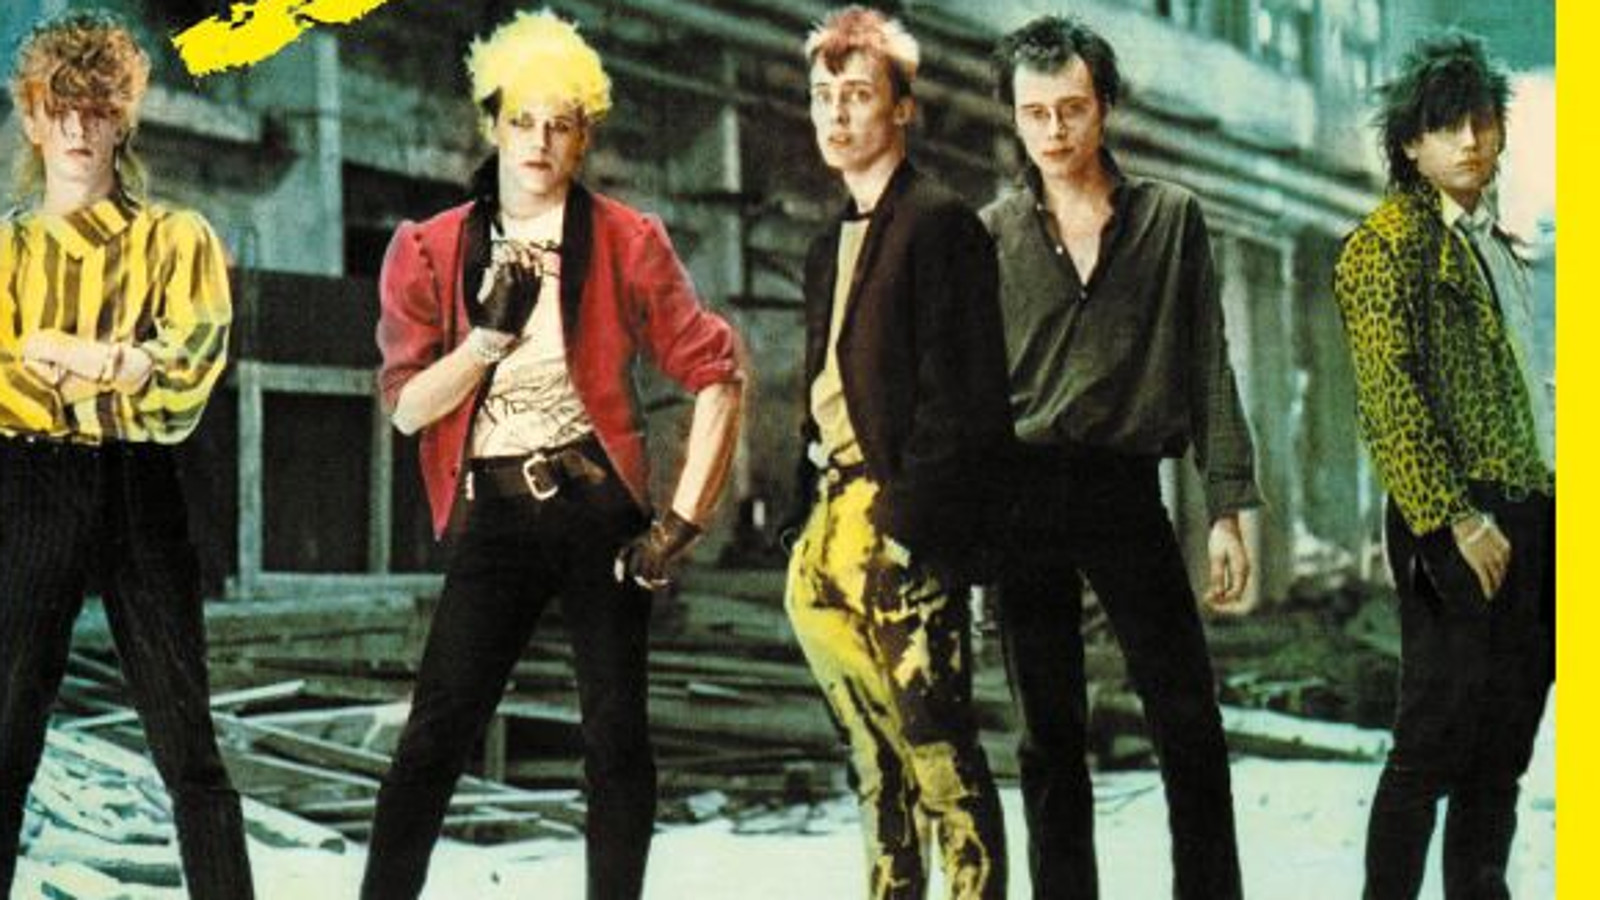 Kuvassa on Dingon viisi jäsentä seisomassa betonisen kerrostalon edessä. Heillä on mustat housut ja vasemmalla olevalla kelta-musta raitainen paita. Hänen vieressään on Neuman, jolla on punainen pusakka. 